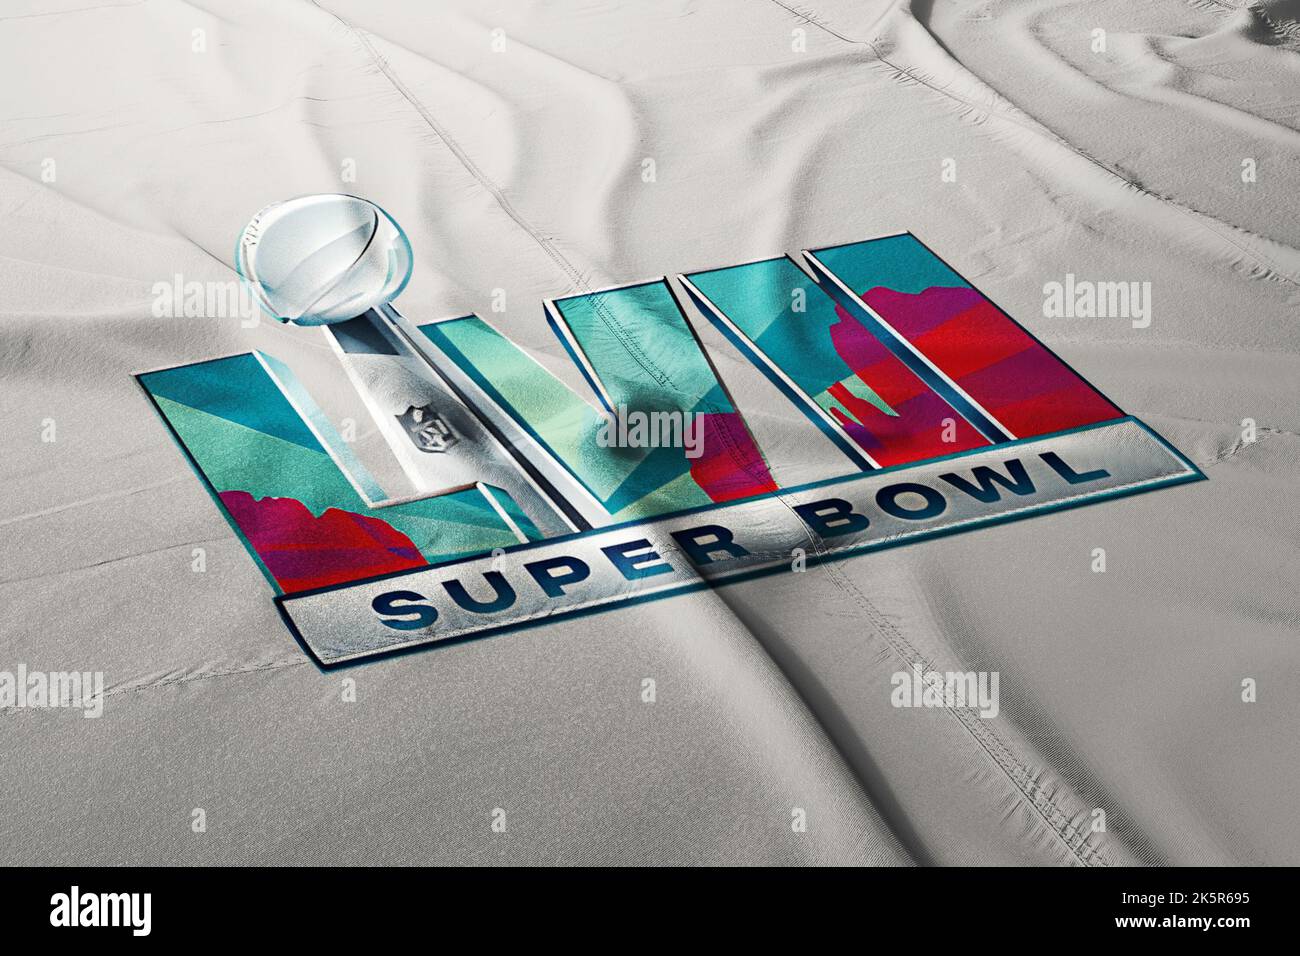 Illustrazione per il prossimo super Bowl lvii evento 2023 campionato nazionale di calcio, Foto Stock